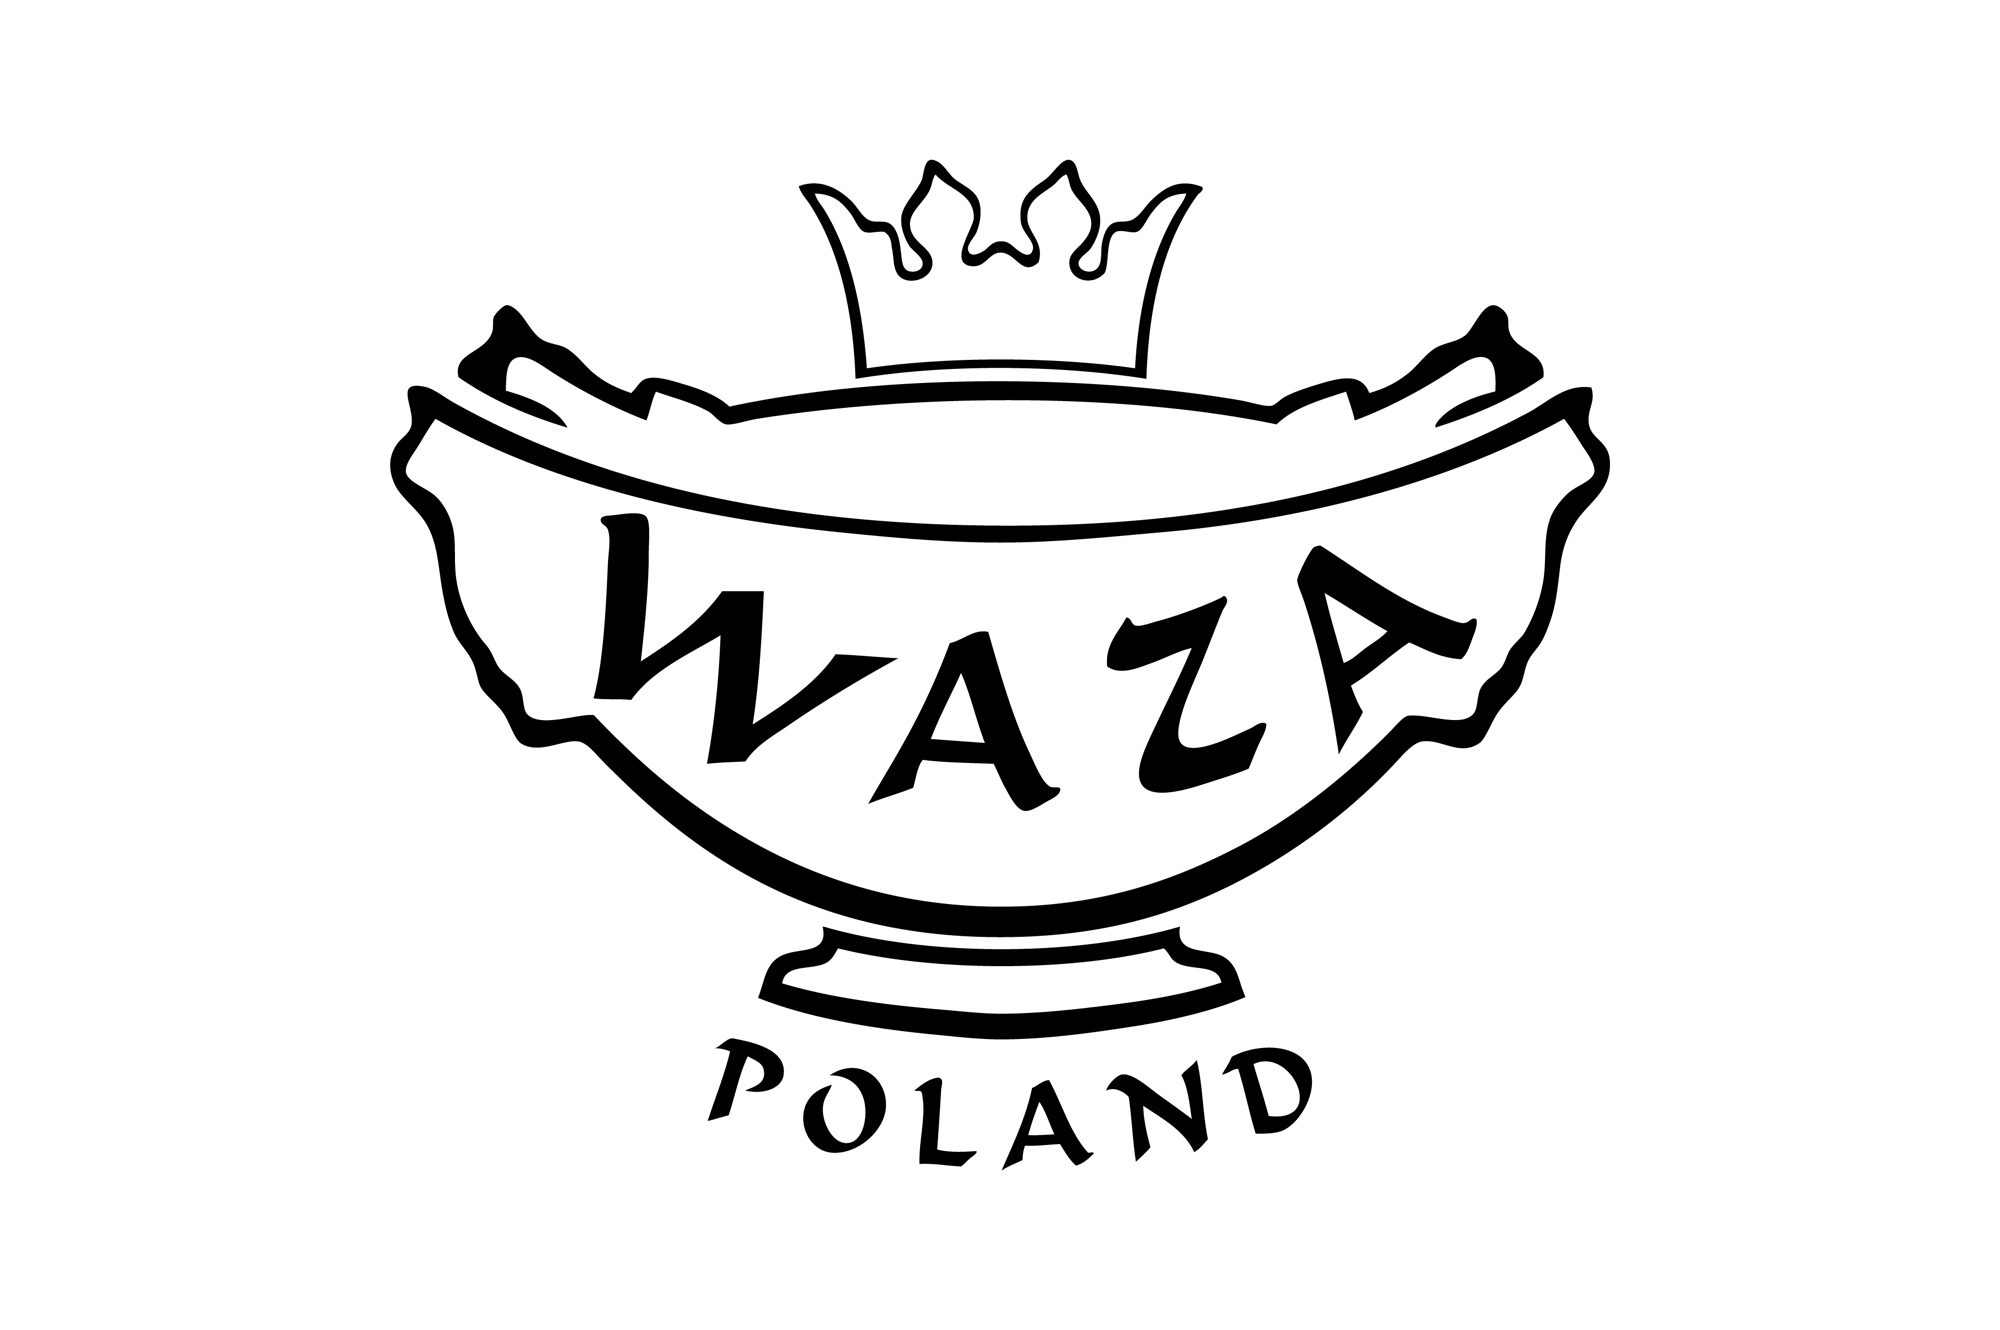 Waza - logo PLANSZA 30x30cm EDYCJA